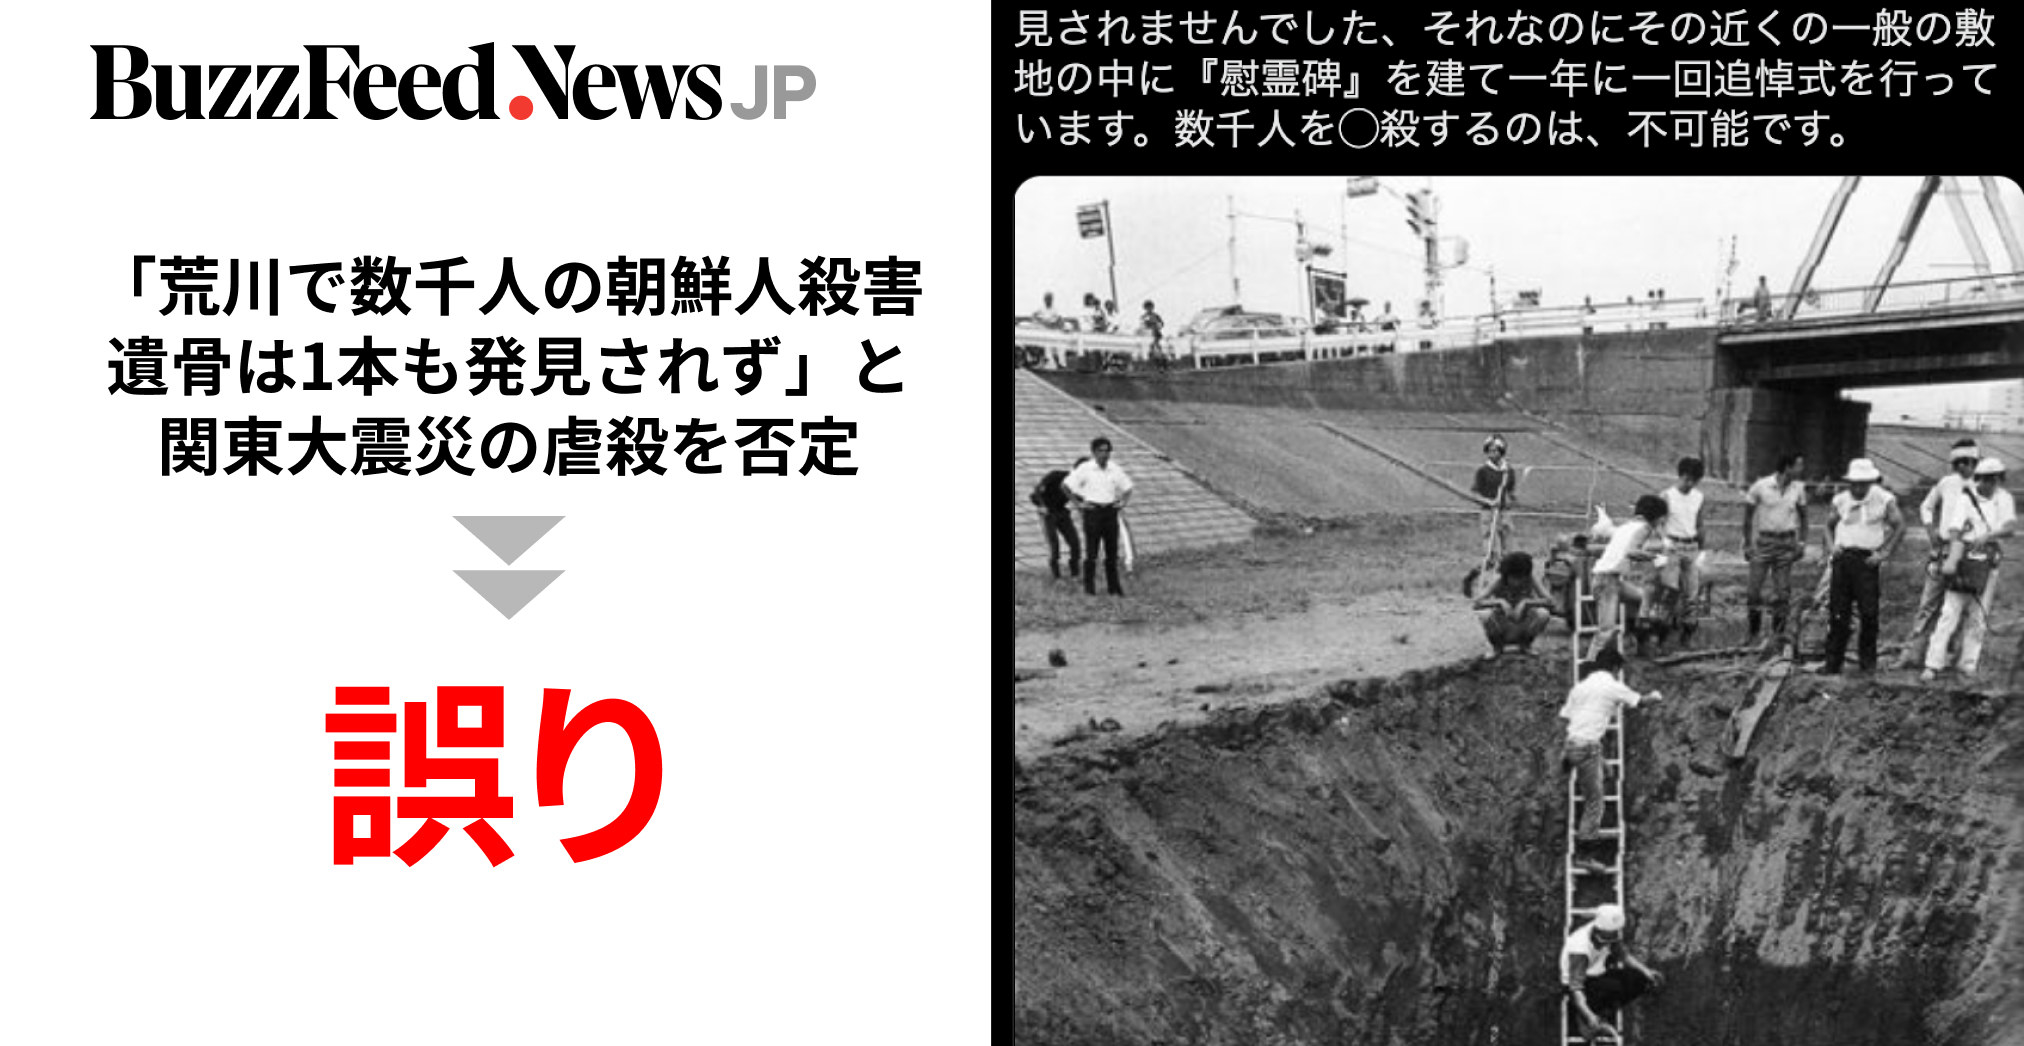 関東大震災「荒川で数千人の朝鮮人殺害、遺骨は1本も発見されず」と 